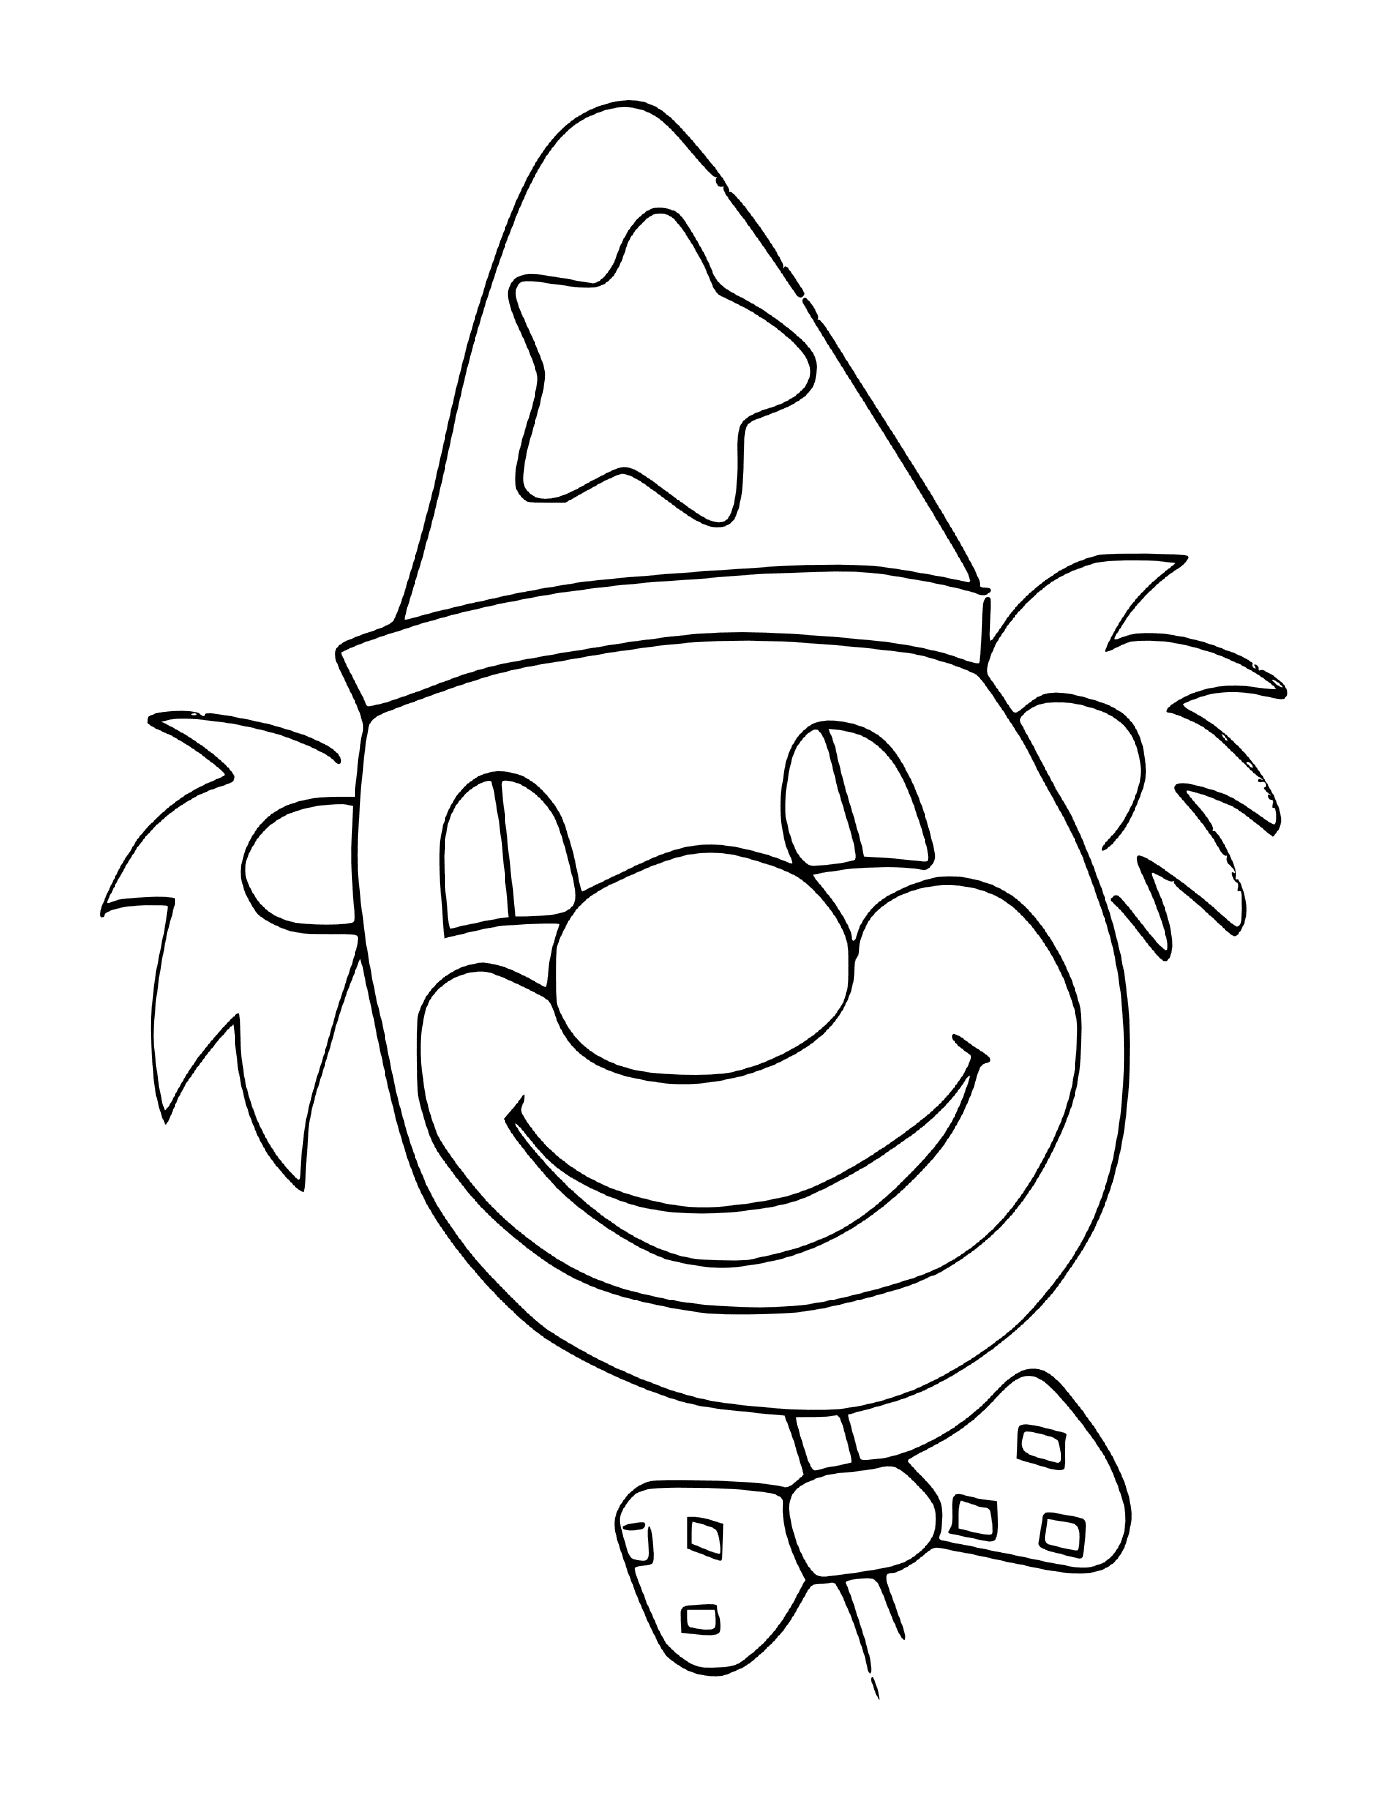  Clown mit einem fröhlichen Lächeln, um Kinder zu amüsieren 